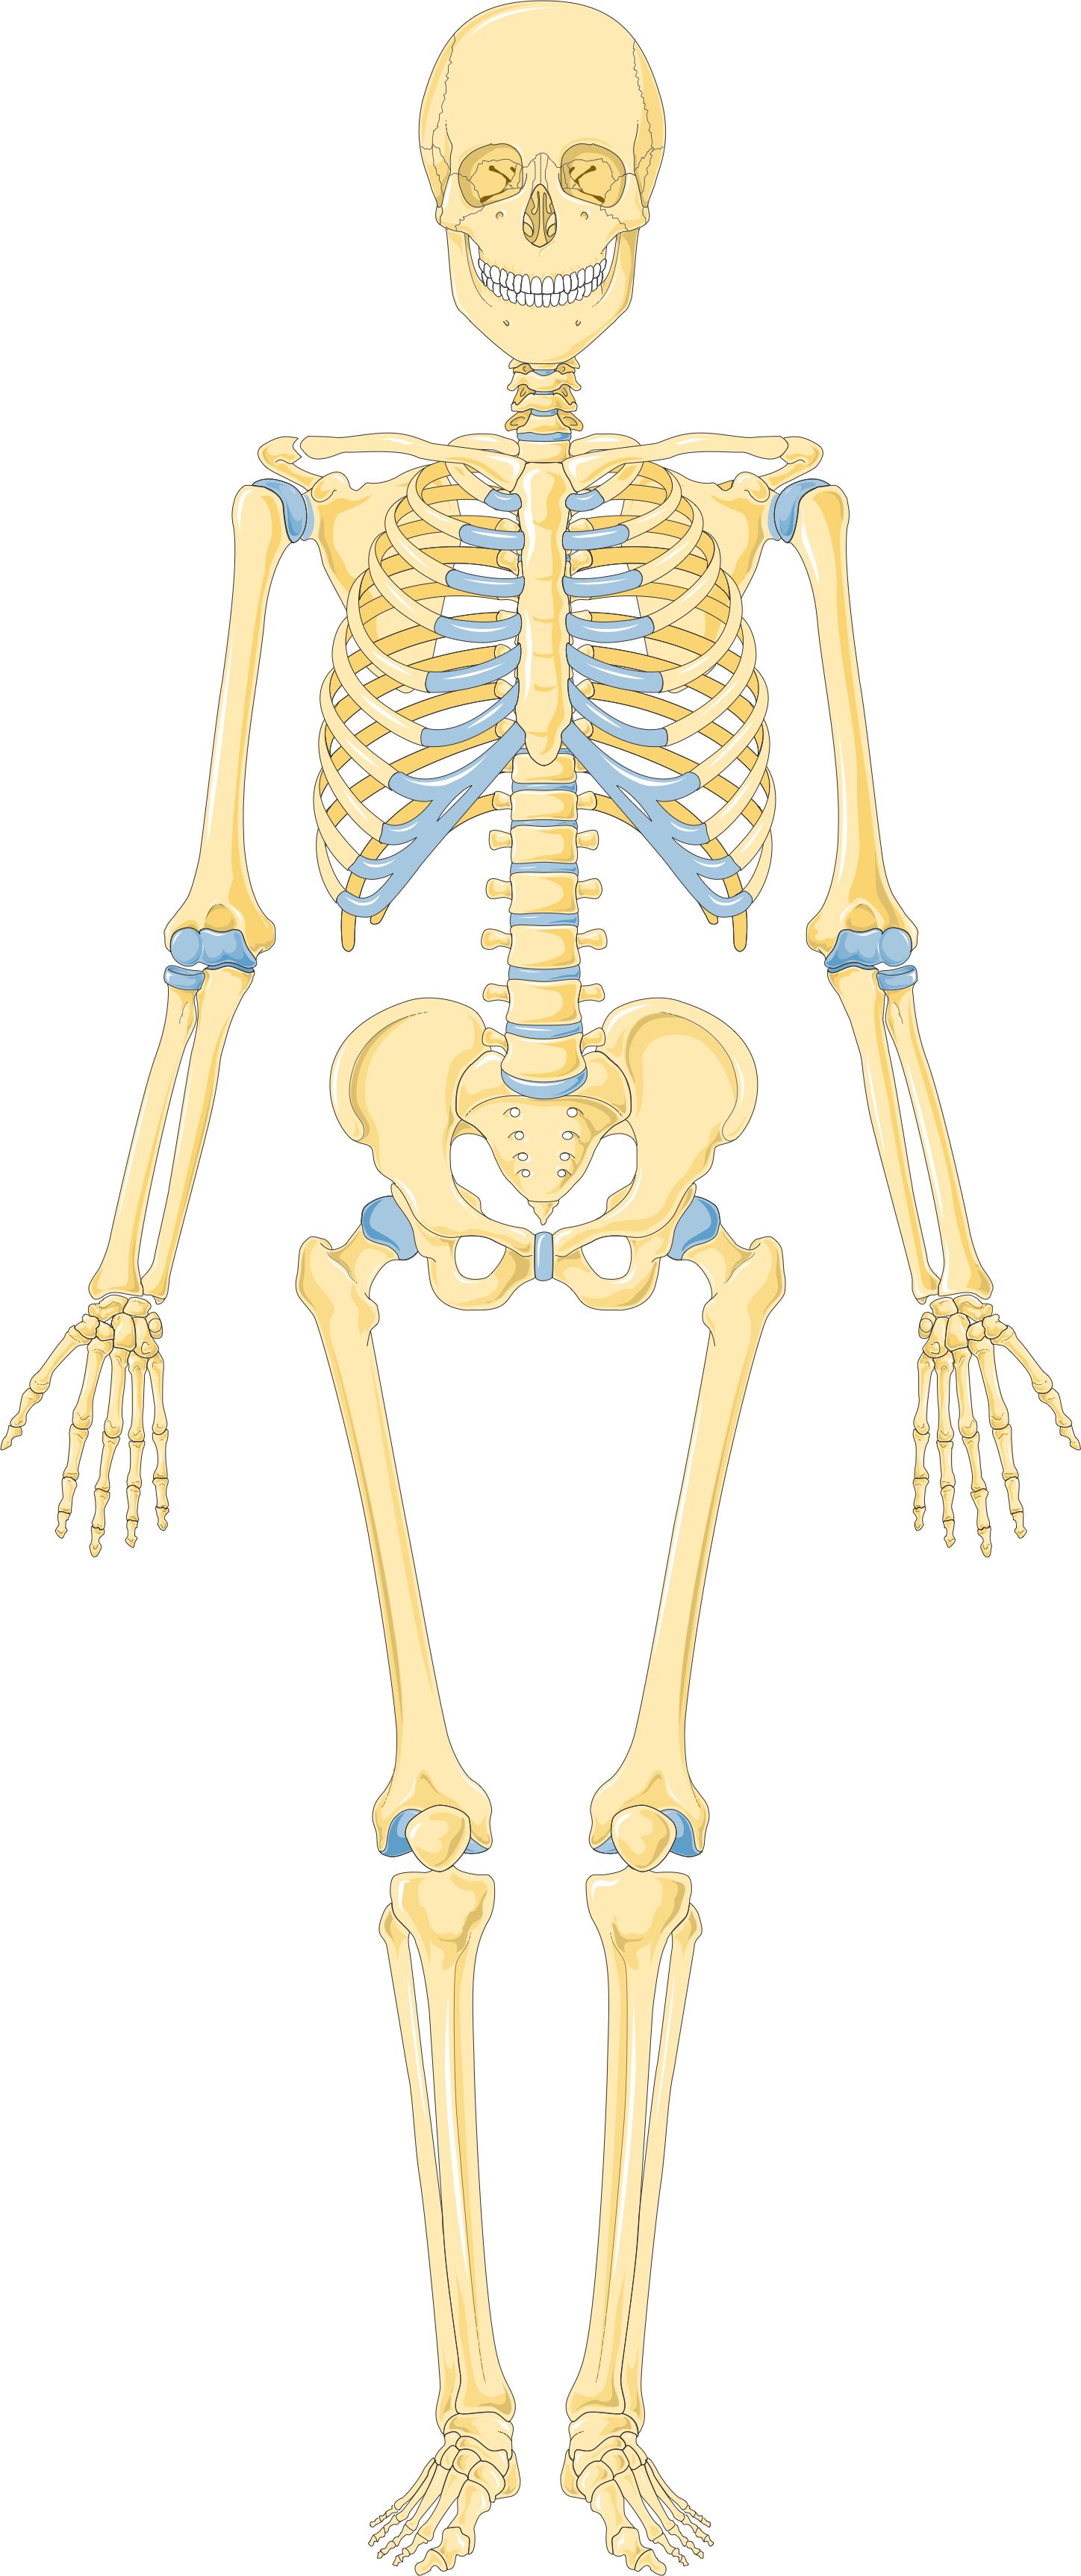 Uno scheletro del corpo umano in colore giallo con indicazione delle cartalilagini in calore azzurro